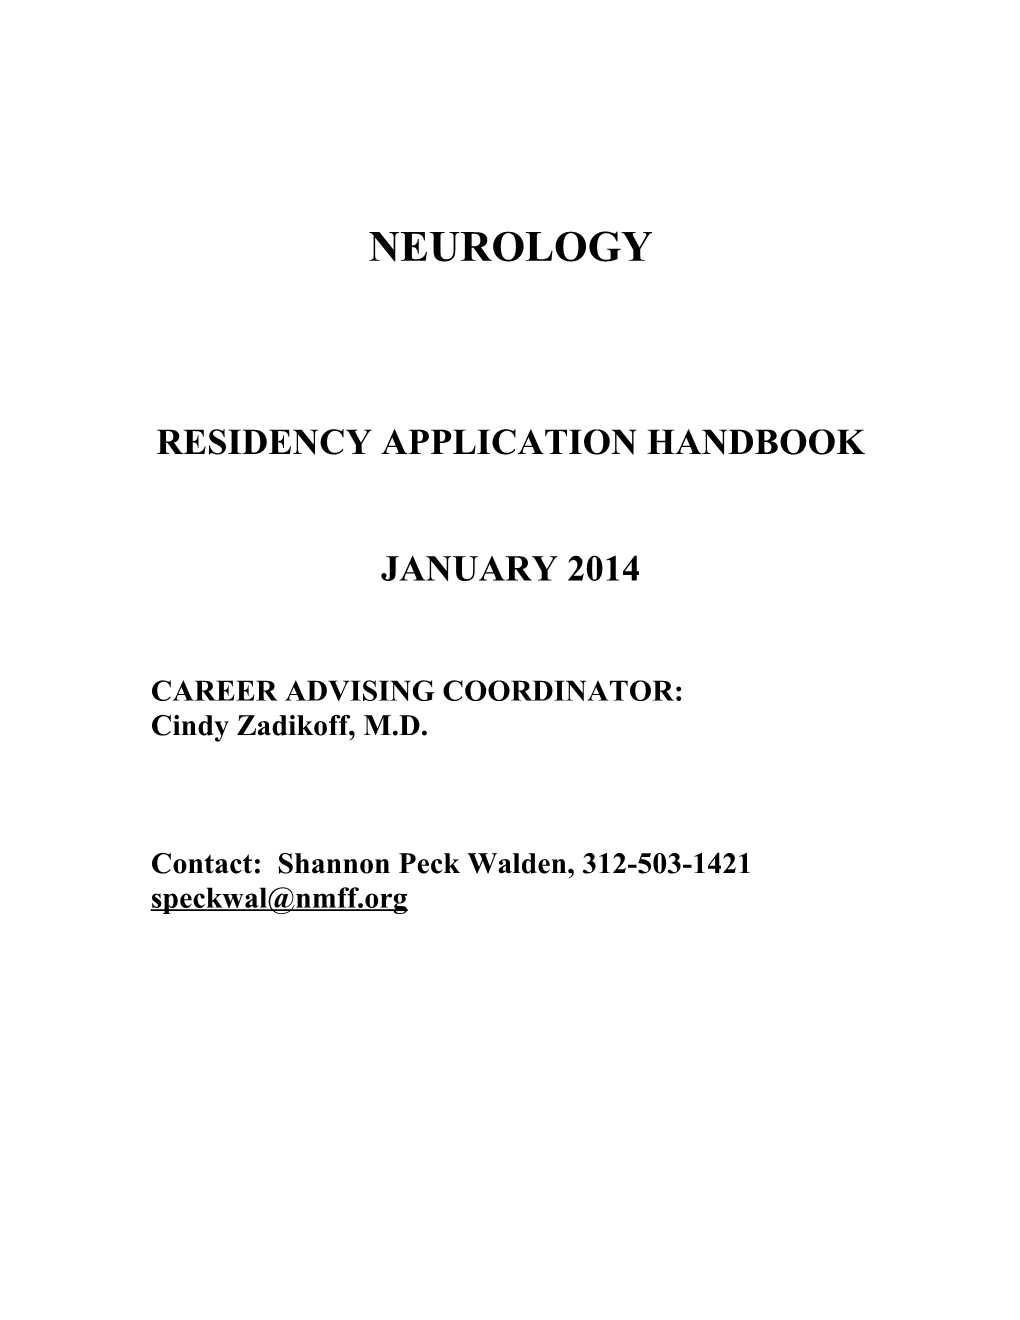 Residency Application Handbook